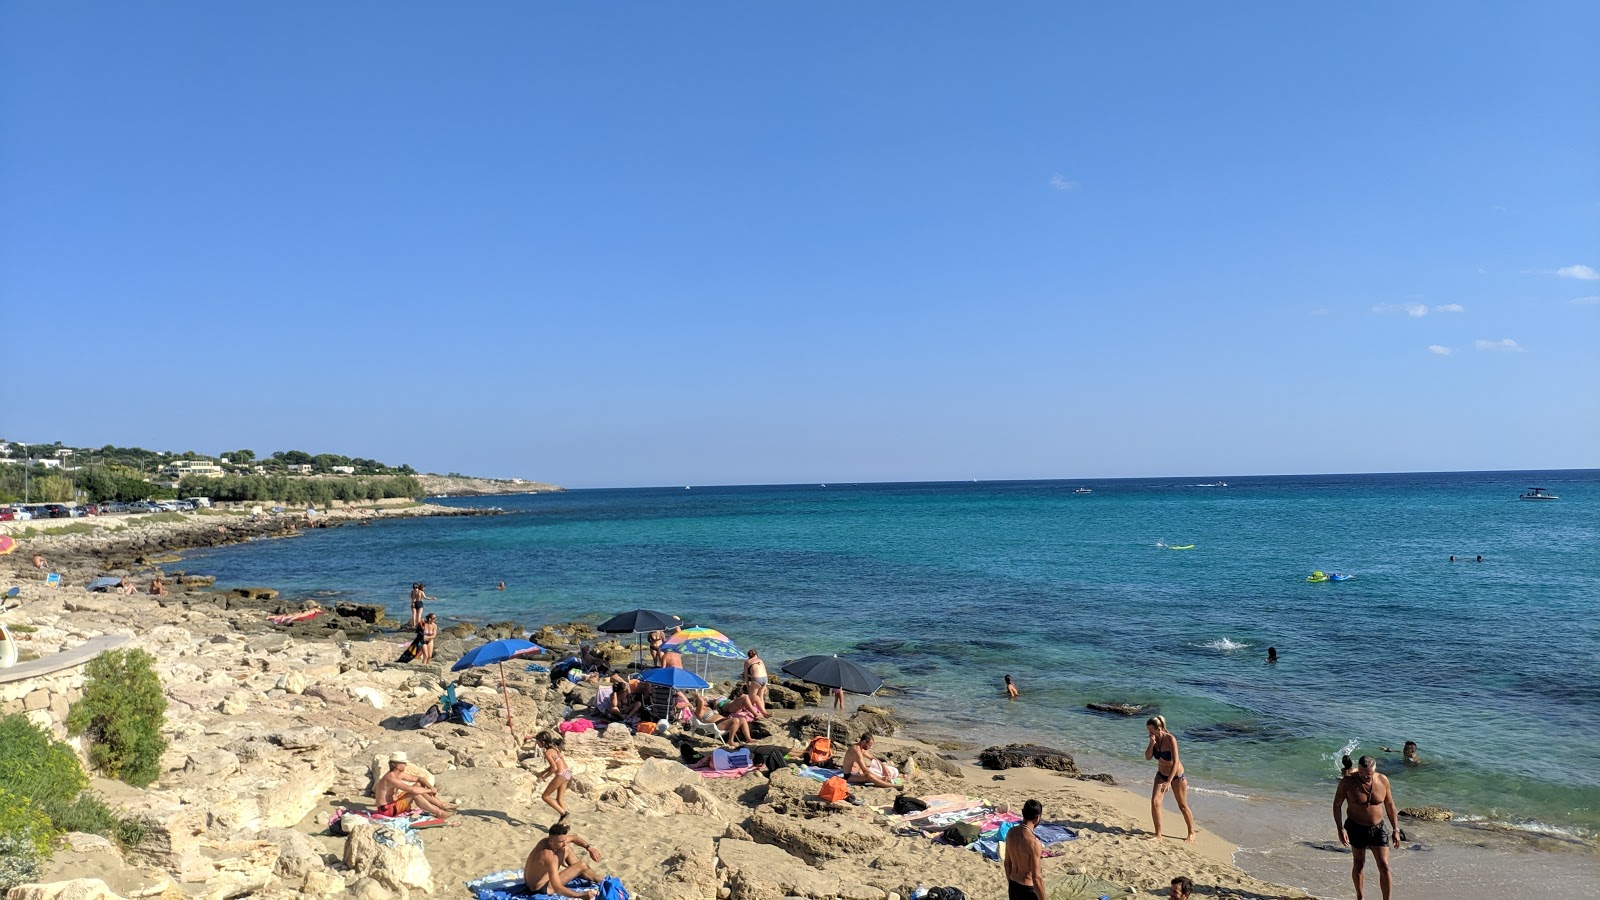 Felloniche Spiaggia'in fotoğrafı parlak kum ve kayalar yüzey ile